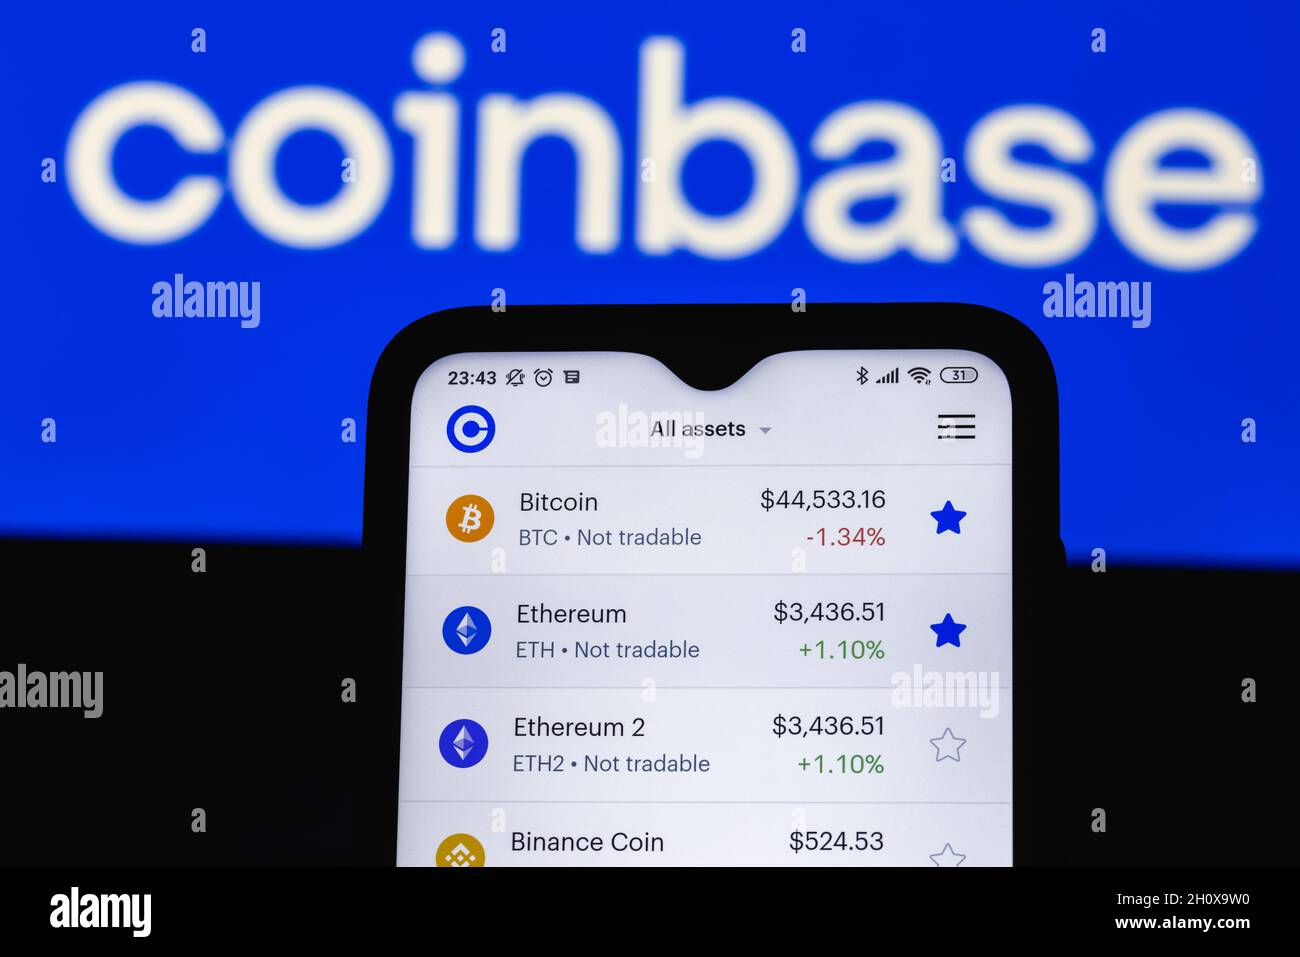 Coinbase stock app 0.018243 bitcoin to usd